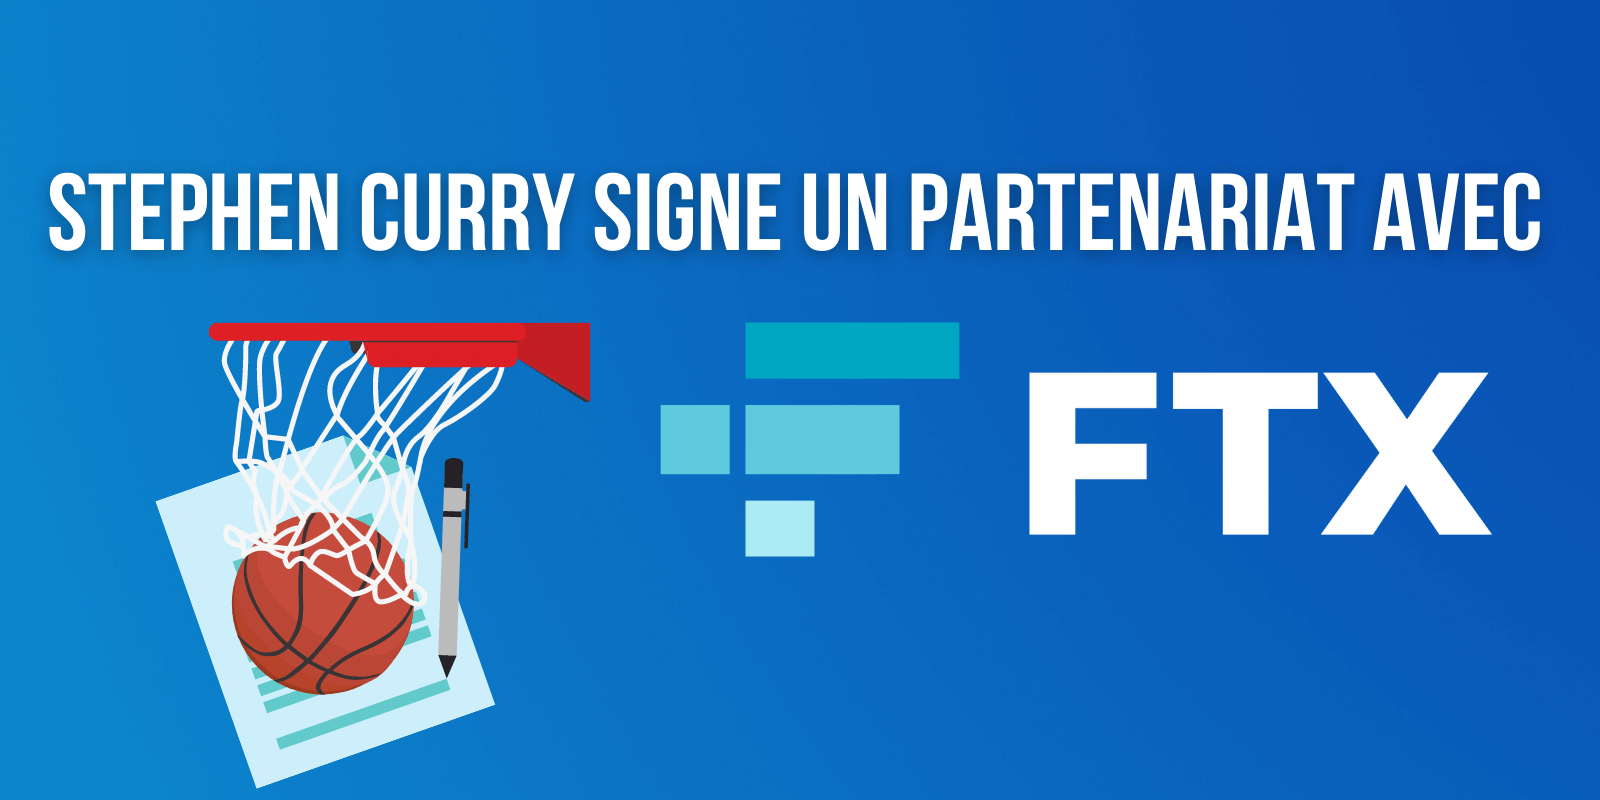 Le joueur NBA Stephen Curry signe un partenariat avec FTX et en devient actionnaire